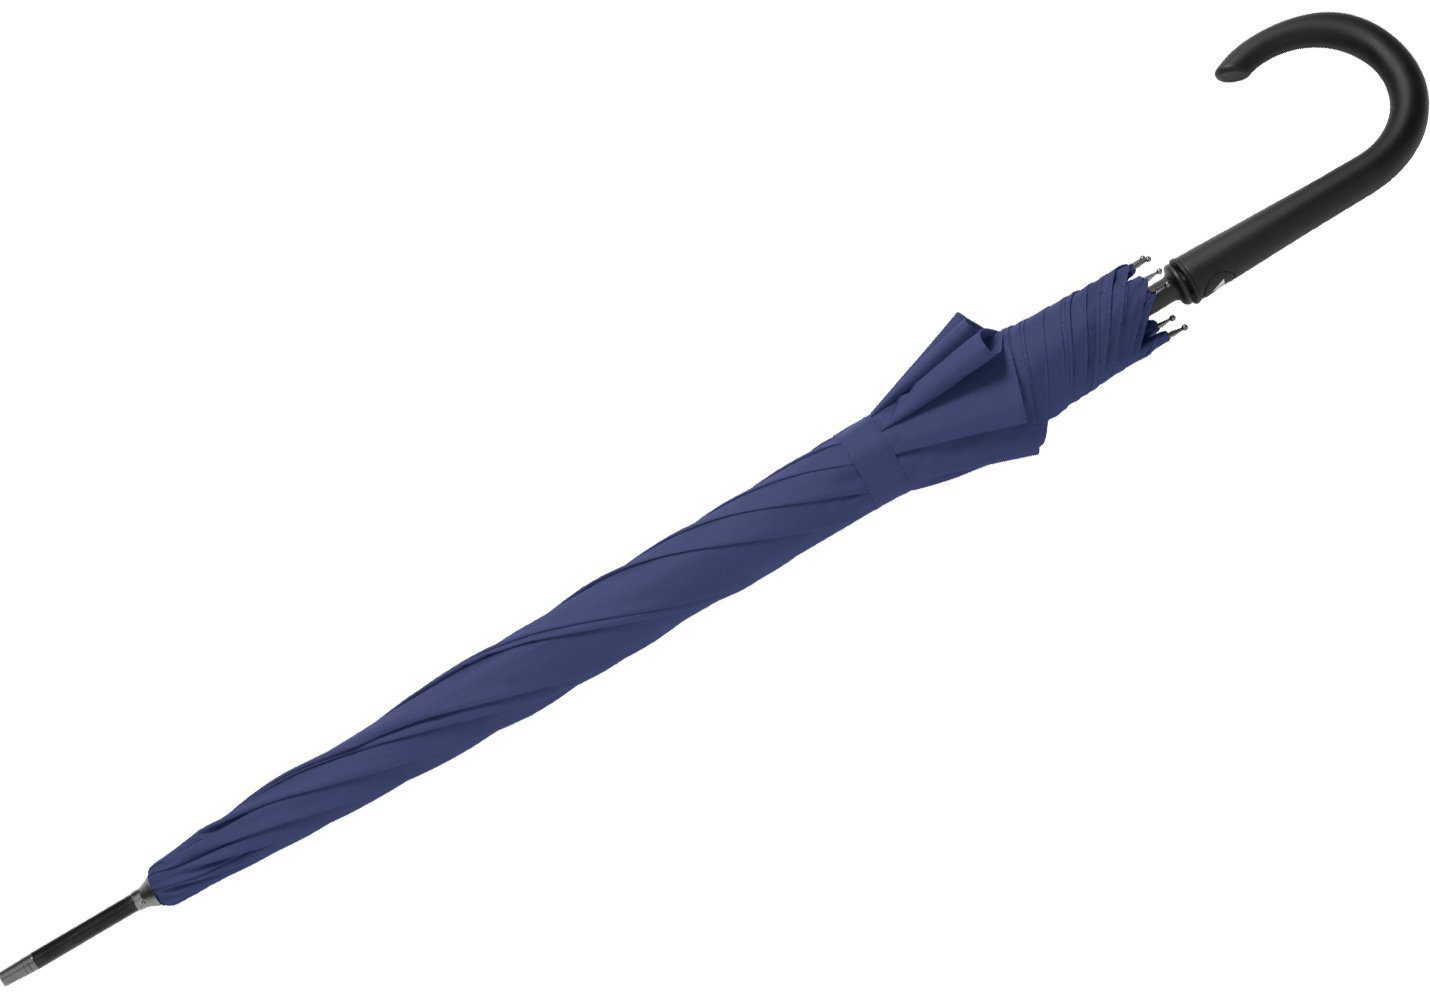 Auf-Automatik, großer RS-Versand Auslöseknopf navy-blau stabiler mit Stahl-Fiberglas-Gestell, Regenschirm integrierter Langregenschirm